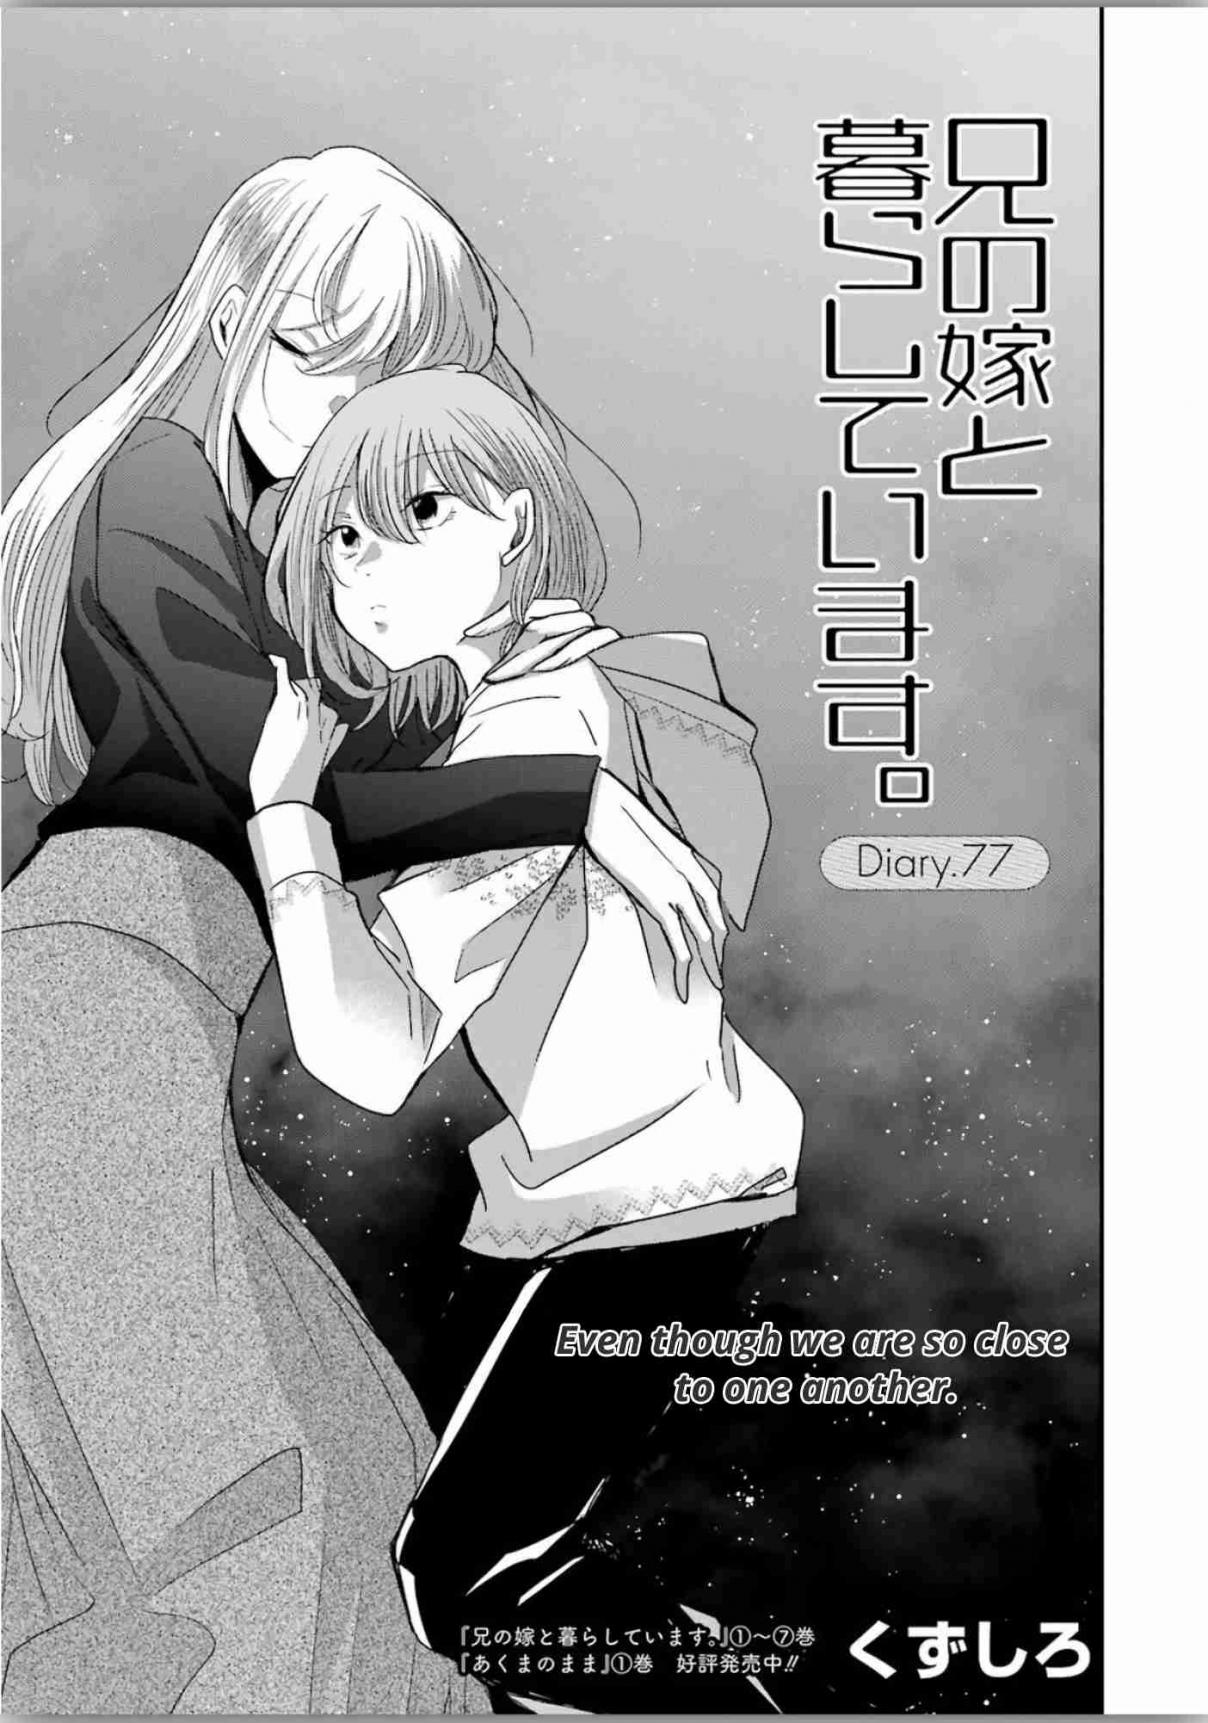 Ani no Yome to Kurashite Imasu. Vol. 8 Ch. 77 Diary 77